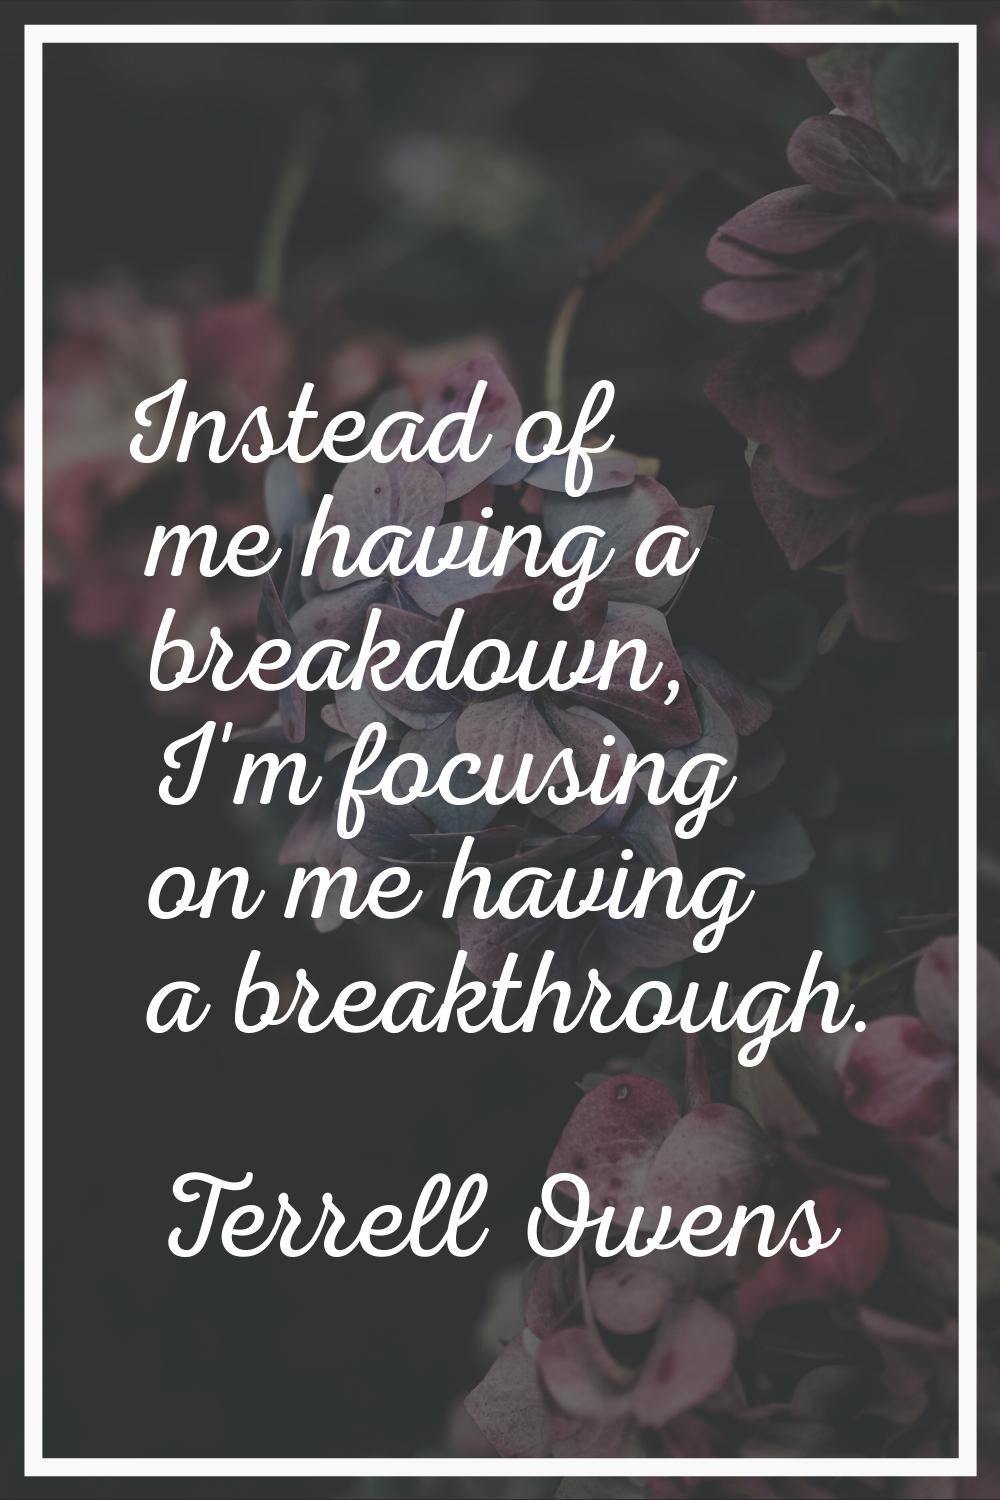 Instead of me having a breakdown, I'm focusing on me having a breakthrough.